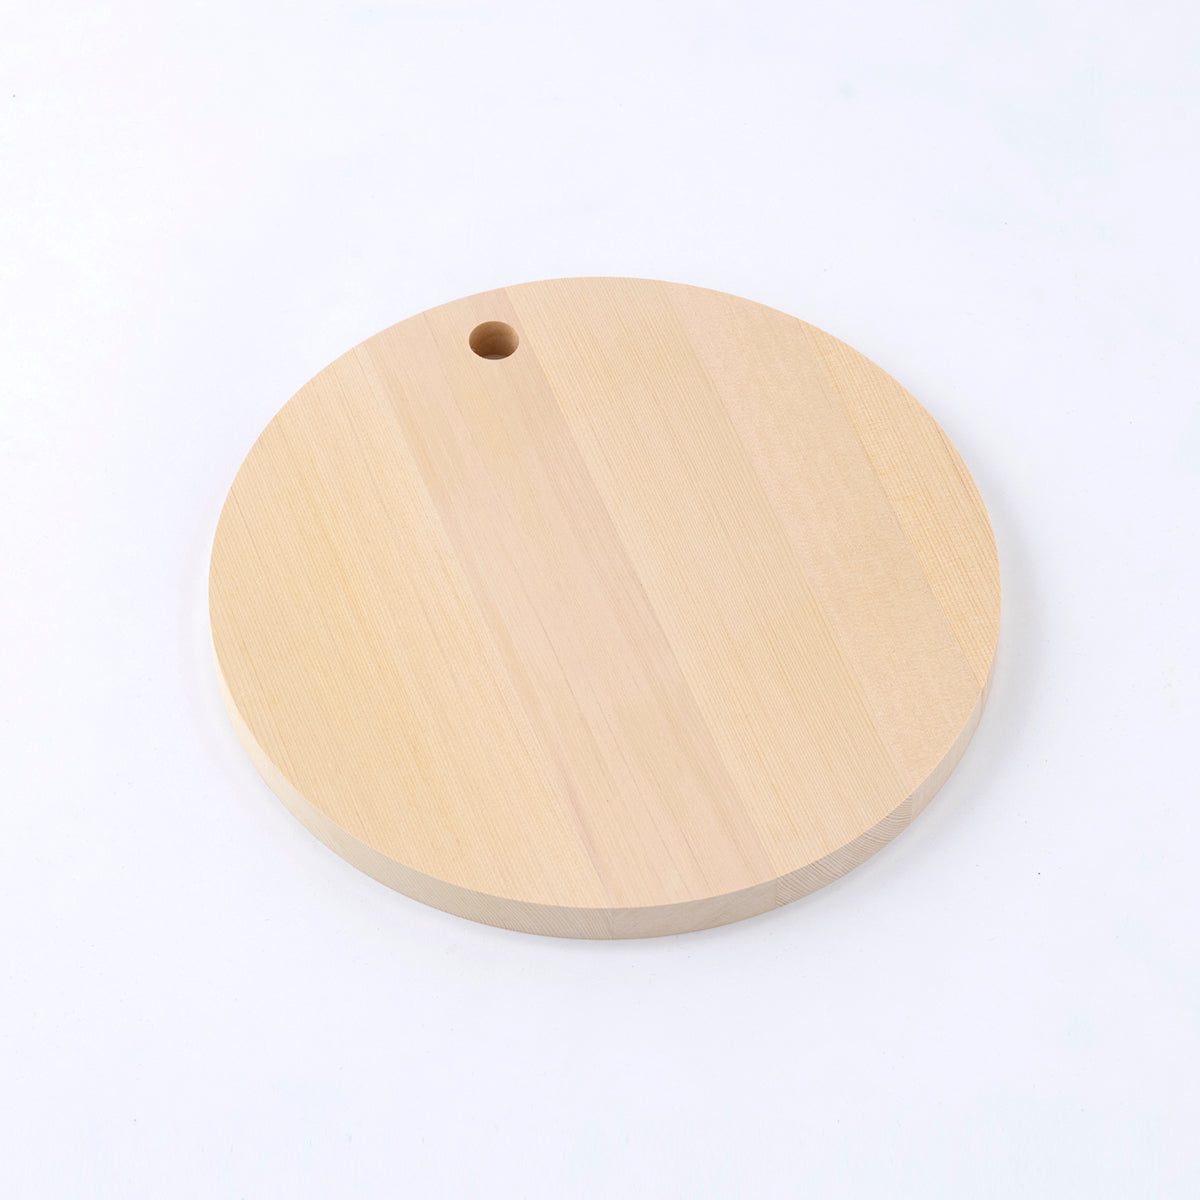 丸いまな板 青森ひばの丸まな板 M 丸型まな板 – 梅沢木材工芸社